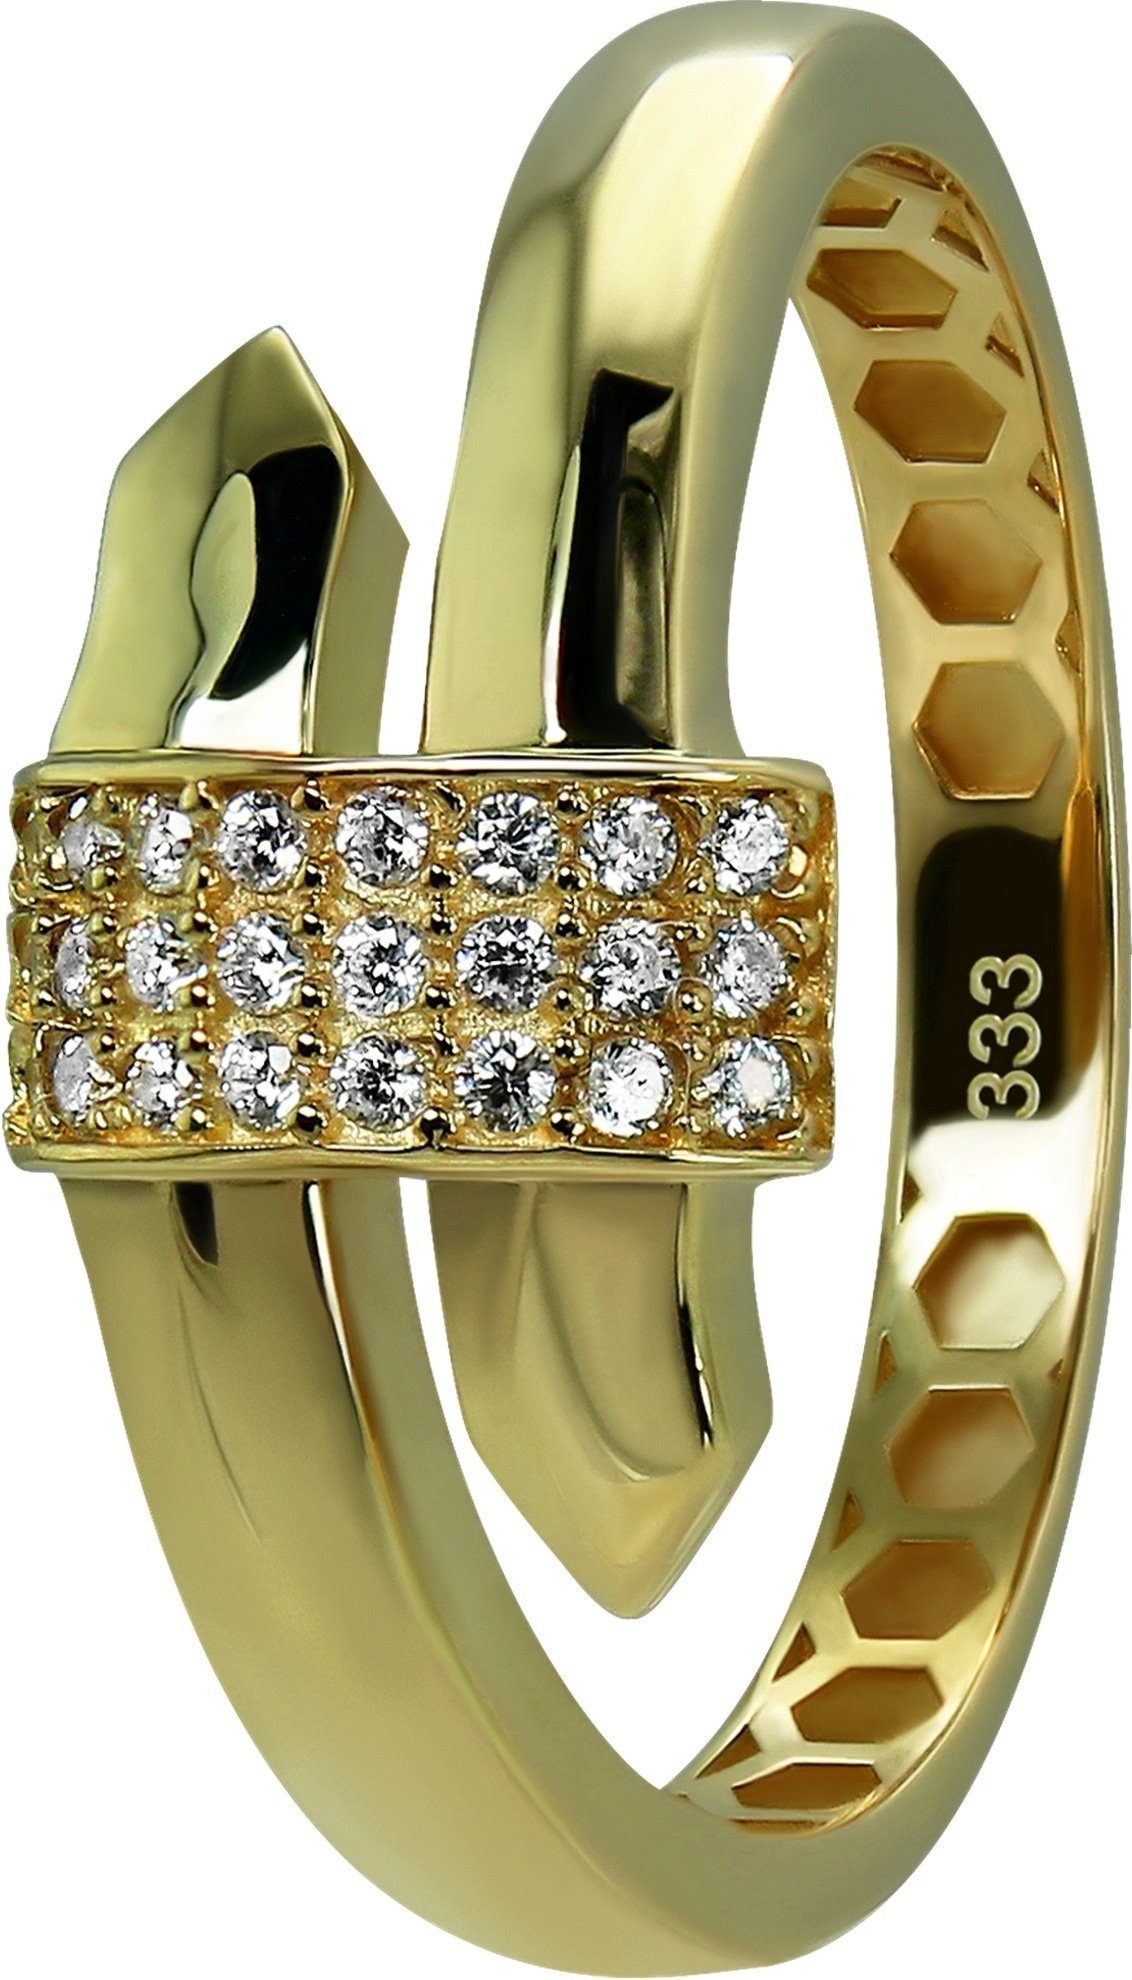 GoldDream Goldring GoldDream Gold Ring Glamour Gr.56 (Fingerring), Damen Ring Glamour 333 Gelbgold - 8 Karat, Farbe: gold, weiß